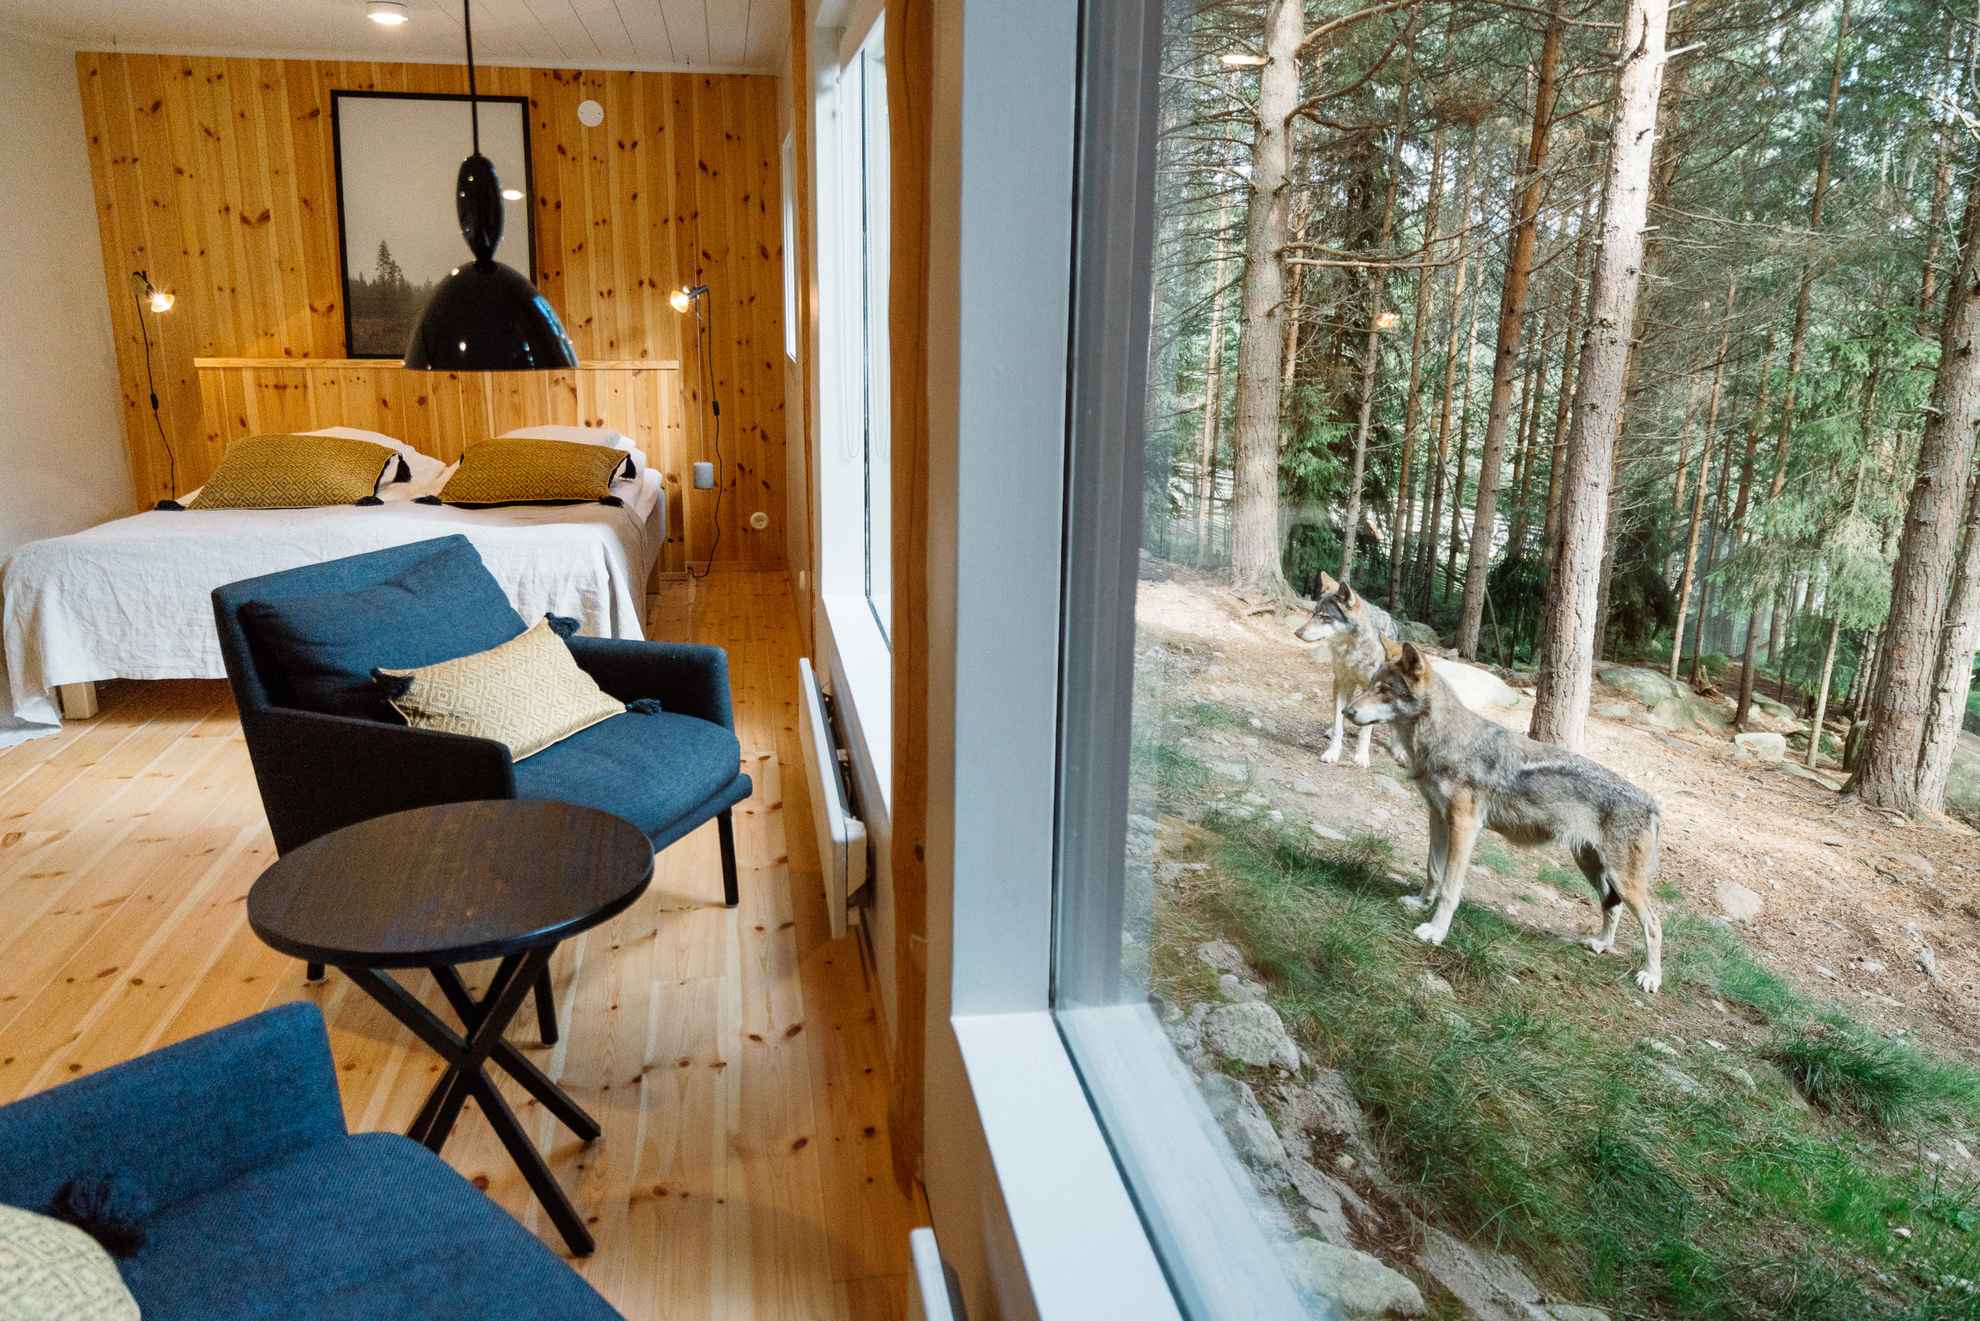 Ein Hotelzimmer mit Panoramafenster zum Wolfsgehege. Die Wölfe stehen vor dem Fenster.